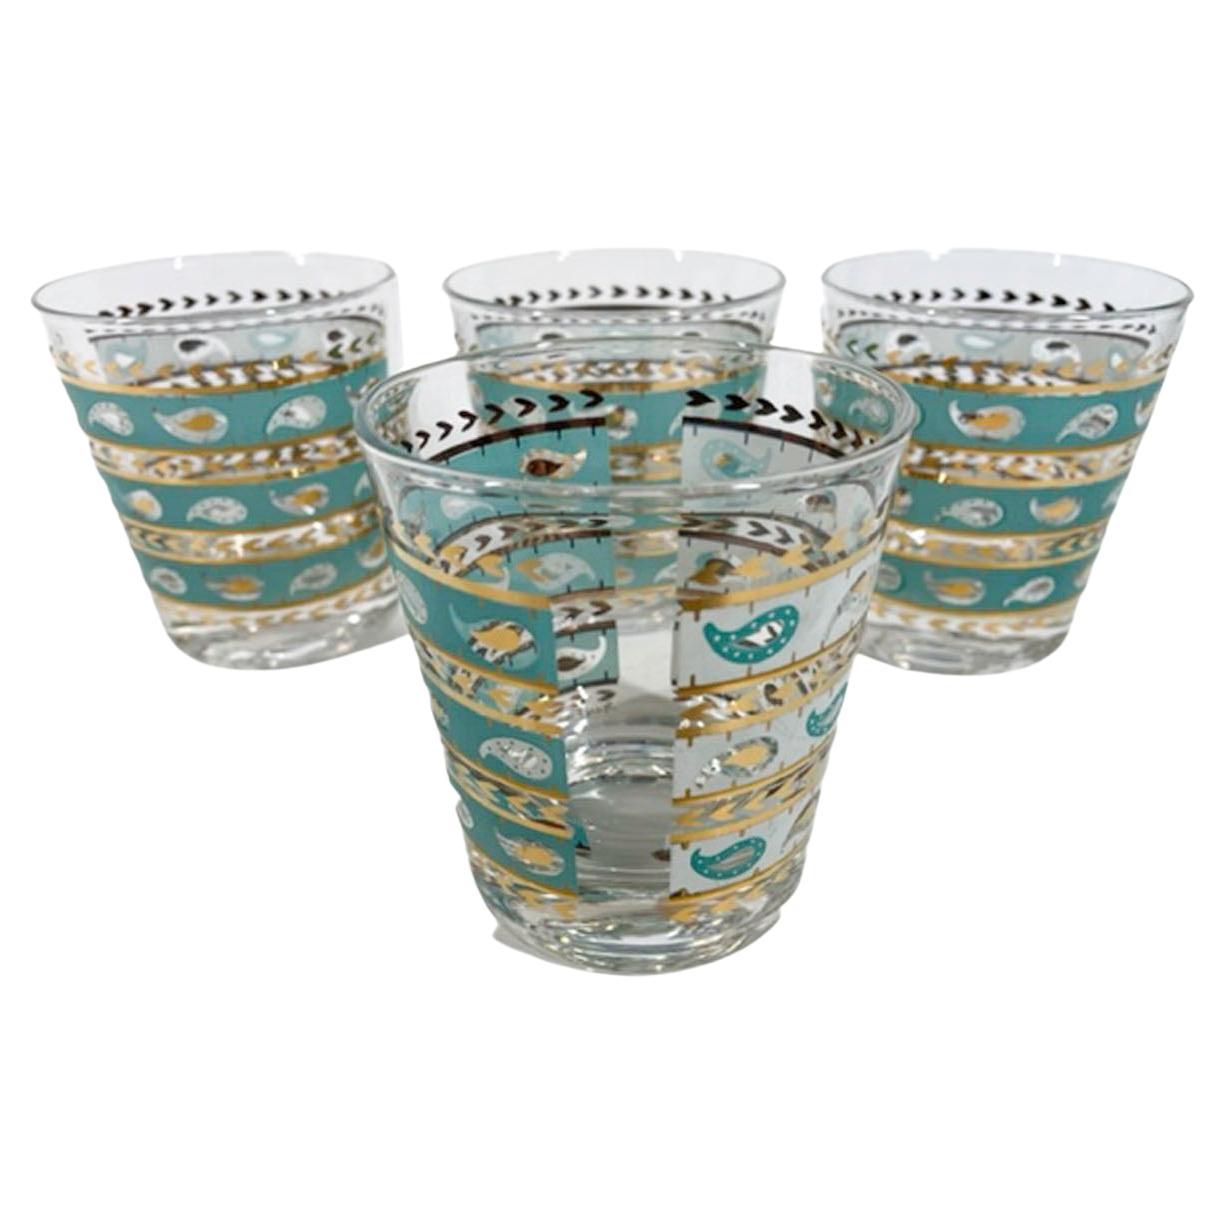 Quatre verres Gay Fad de l'époque médiévale à bandes bleu turquoise et blanches et or 22 carats, à la mode ancienne